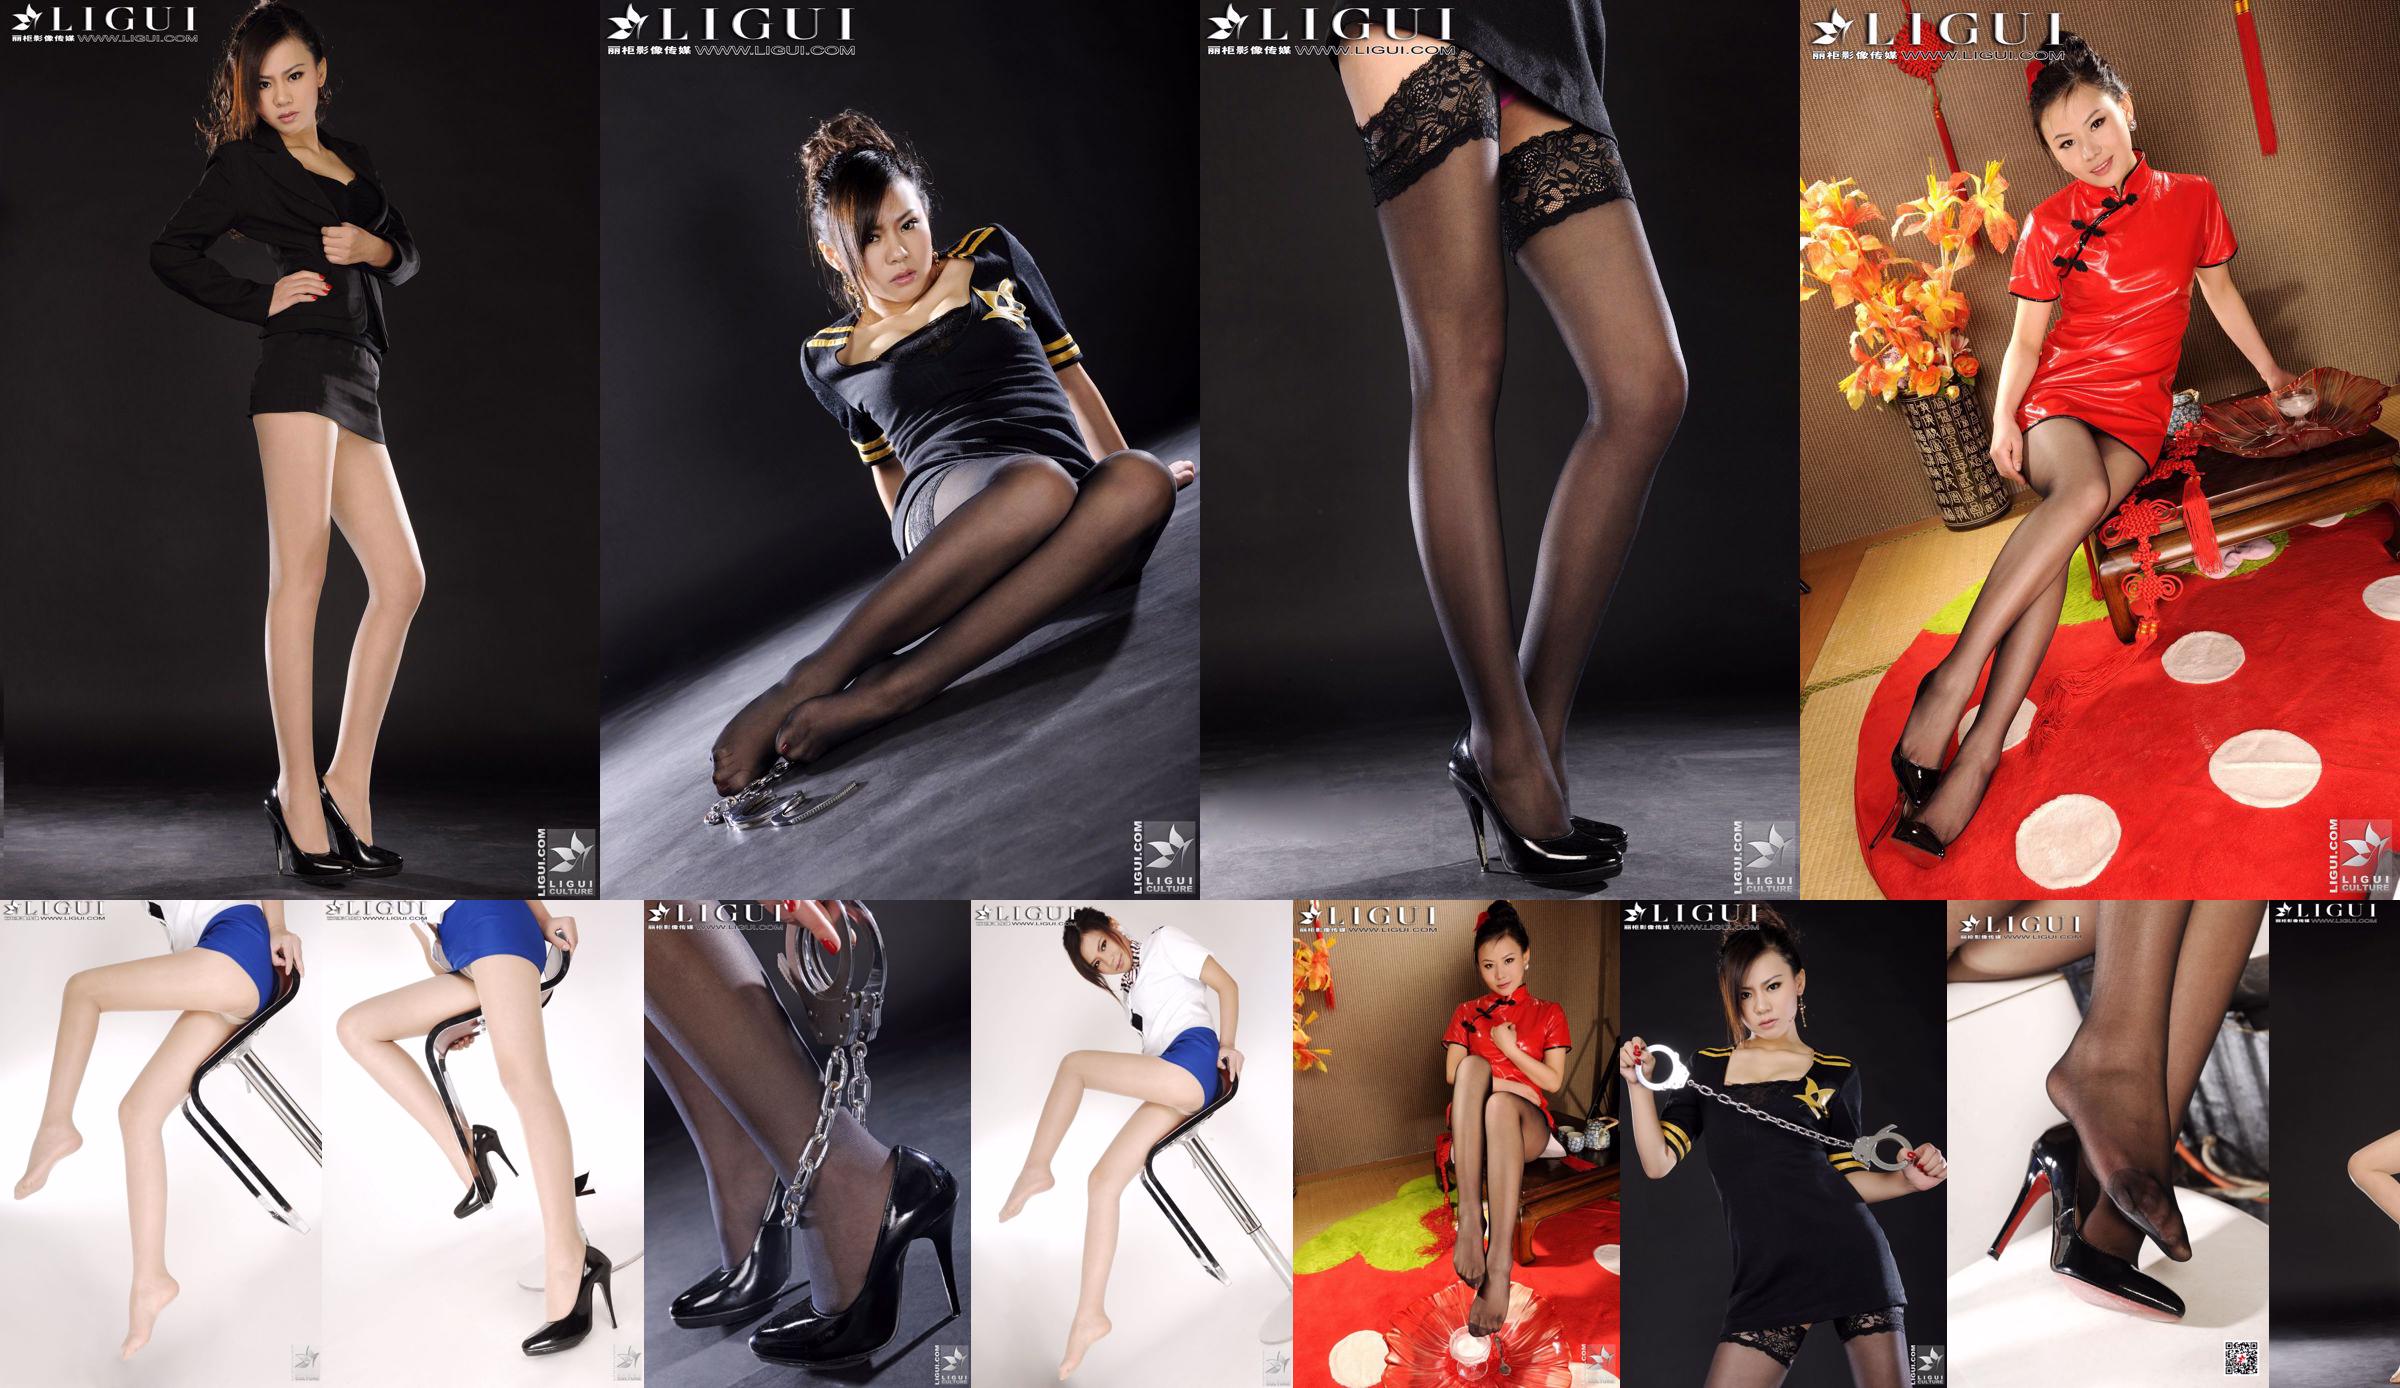 モデルソフィー「魅惑的な黒い絹の脚」[丽柜LiGui]美しい脚と翡翠の足写真写真 No.f433de ページ1